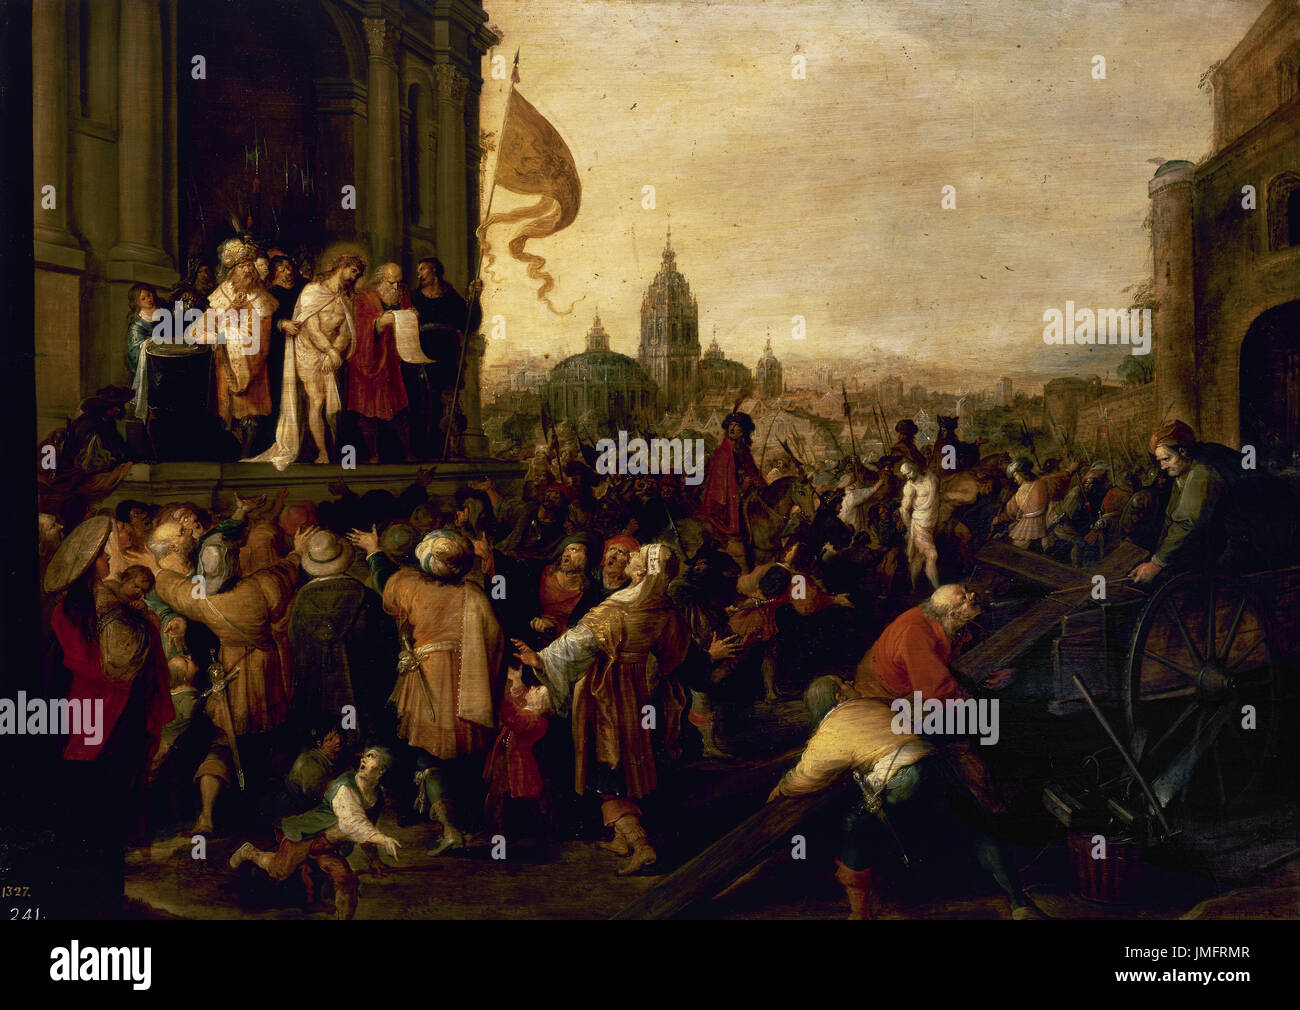 Frans Francken der jüngere (1581-1642). Flämischer Maler. Der Satz von Jesus, ca.1623. Prado-Museum. Madrid. Spanien. Stockfoto